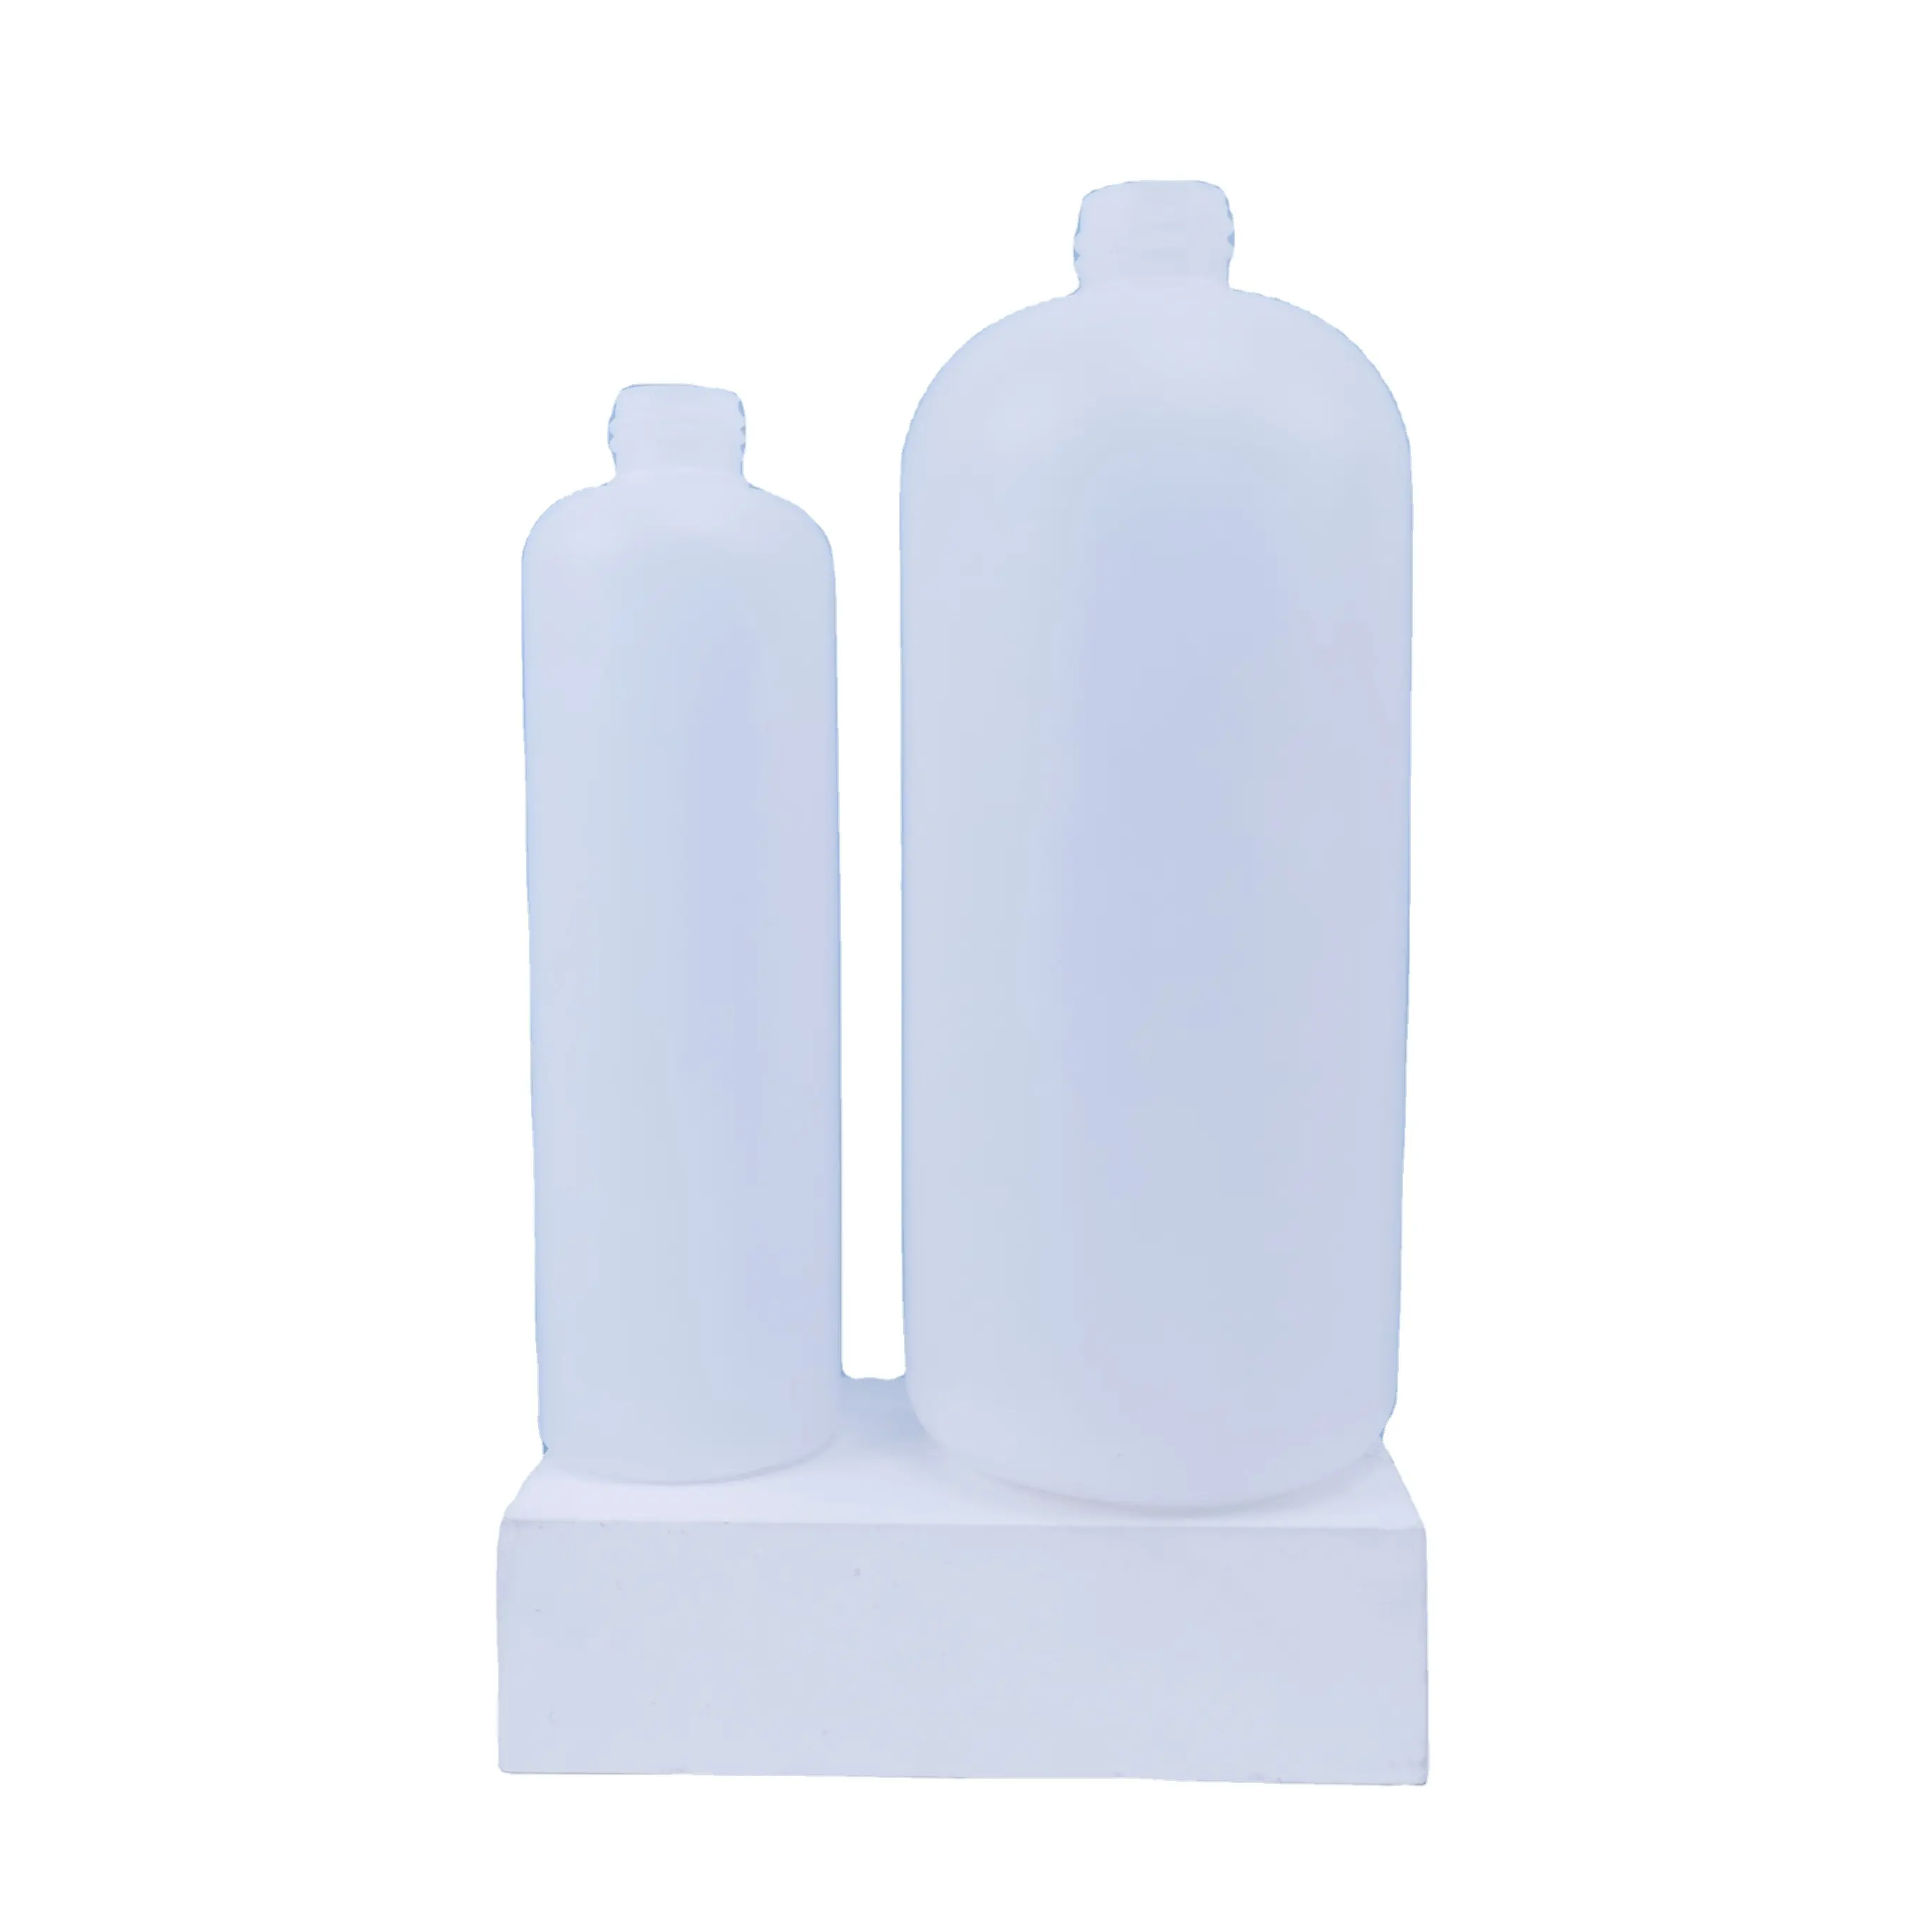 Détergent liquide en plastique hdpe, bouteille chimique, 300ml et 1000ml, 10 pièces